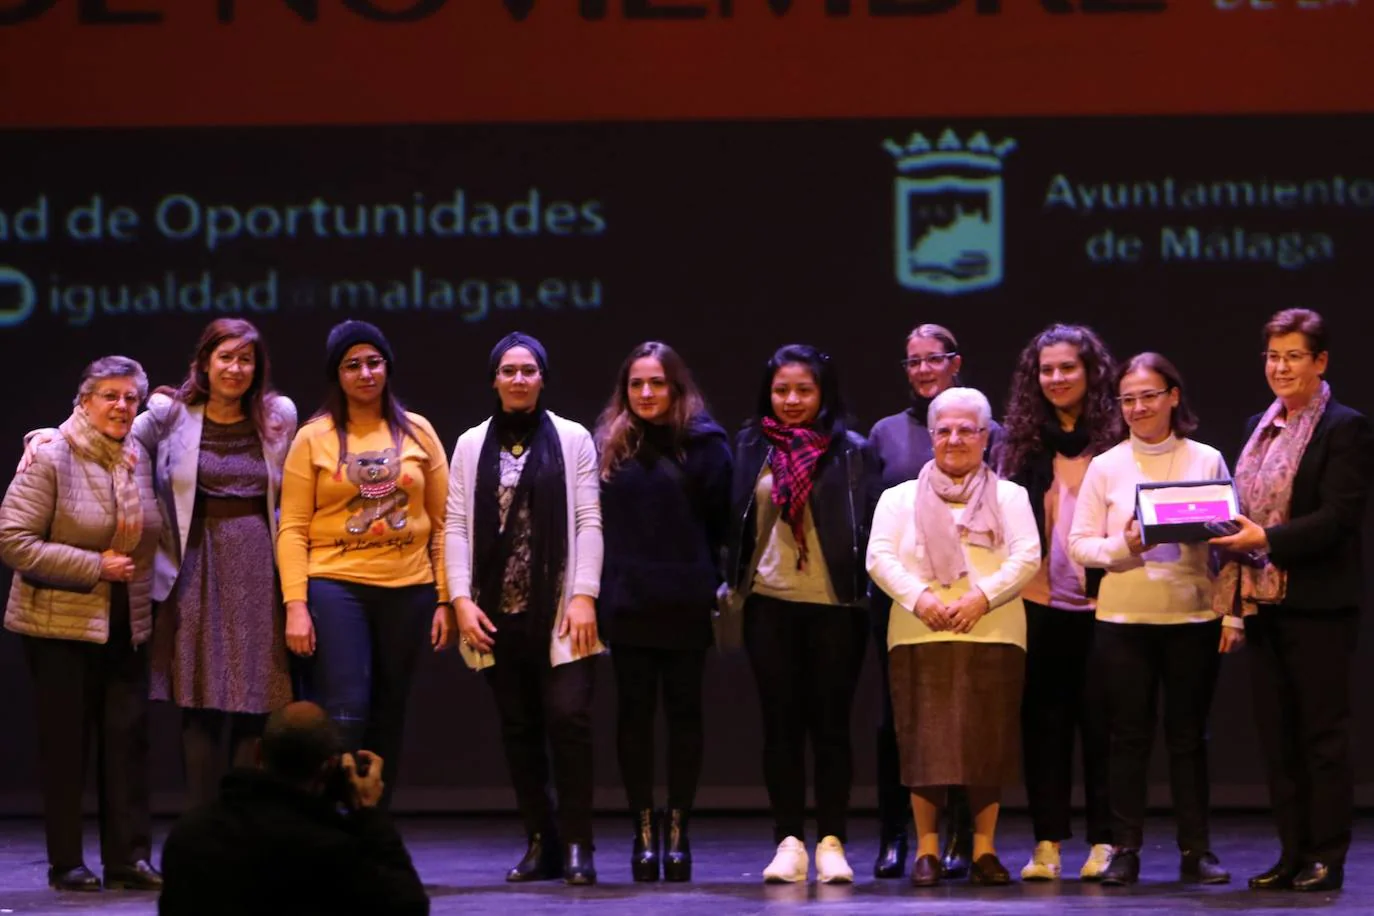 Miembros de la congregación religiosa las Adoratrices de Málaga en la gala para favorecer la eliminación de la violencia contra la mujer en el Cervantes.